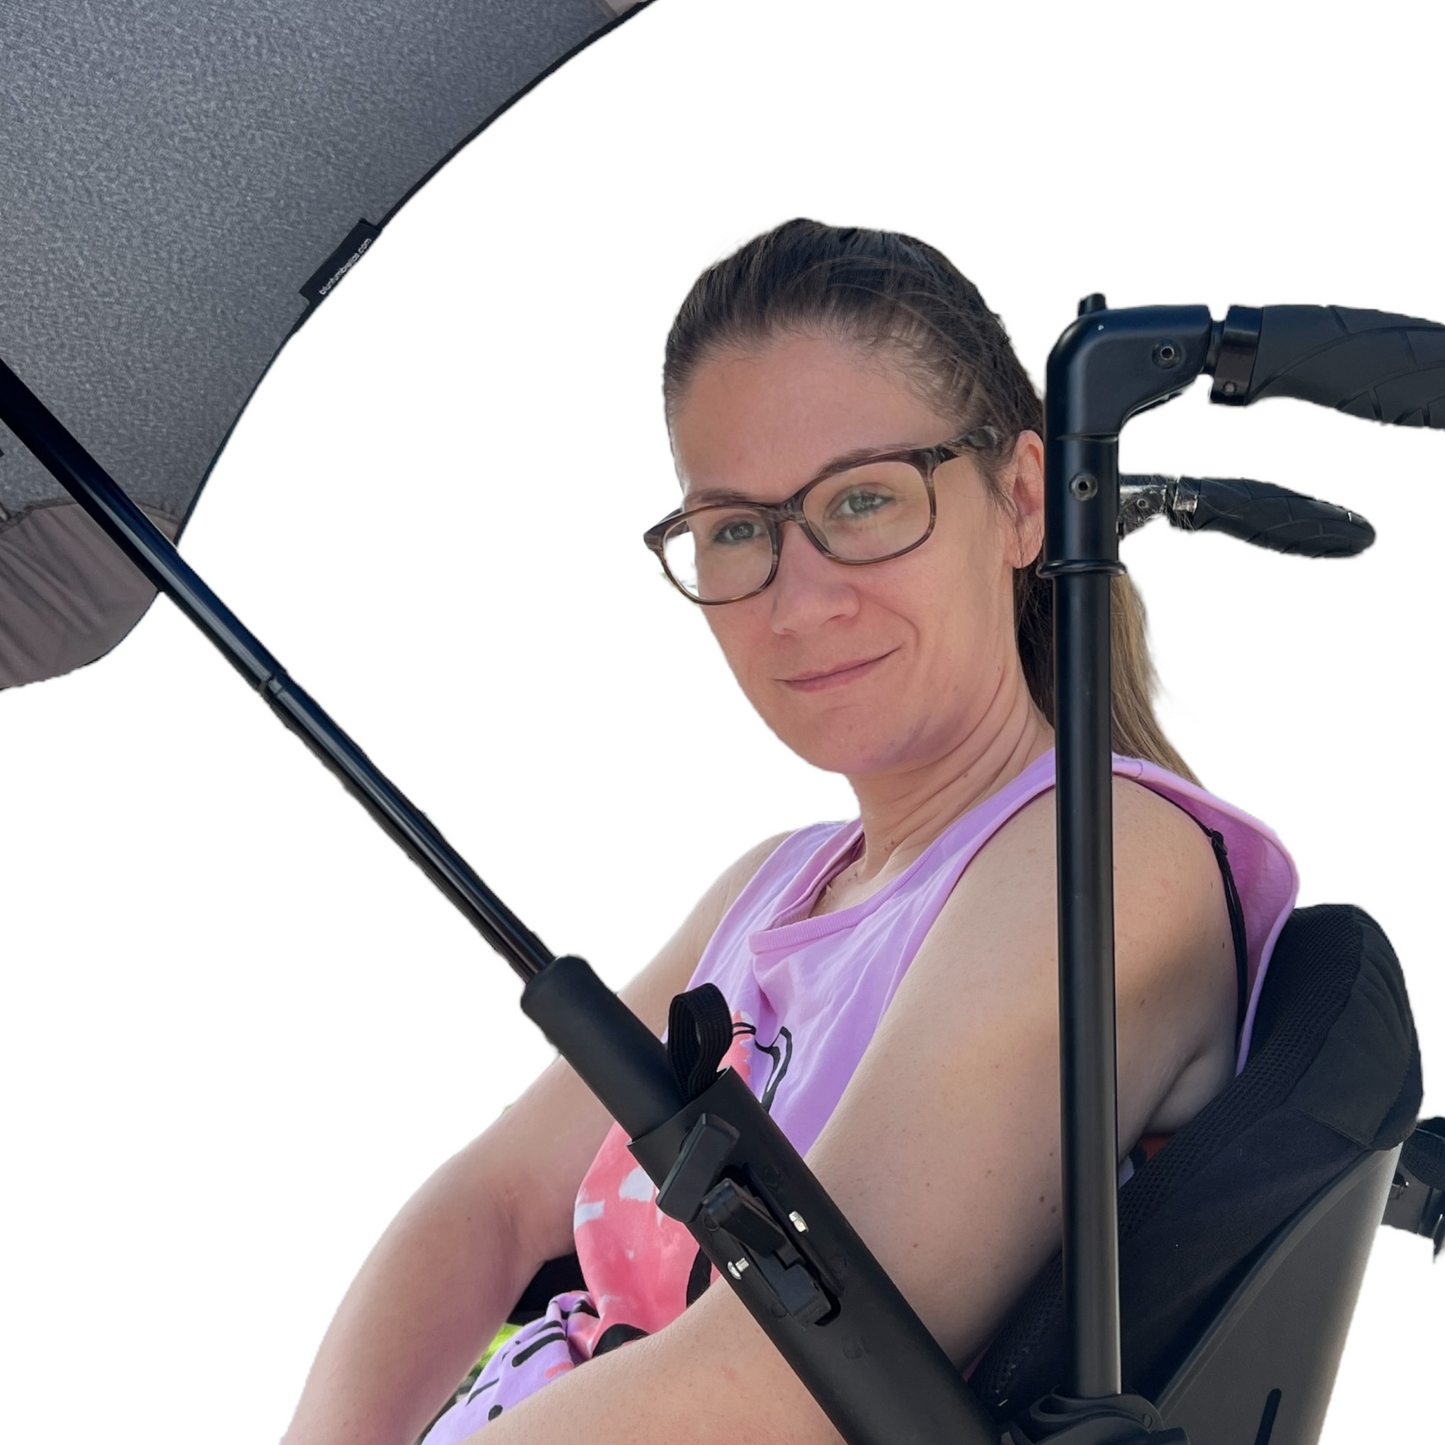 Mobility Aid — Plastic Umbrella Clamp